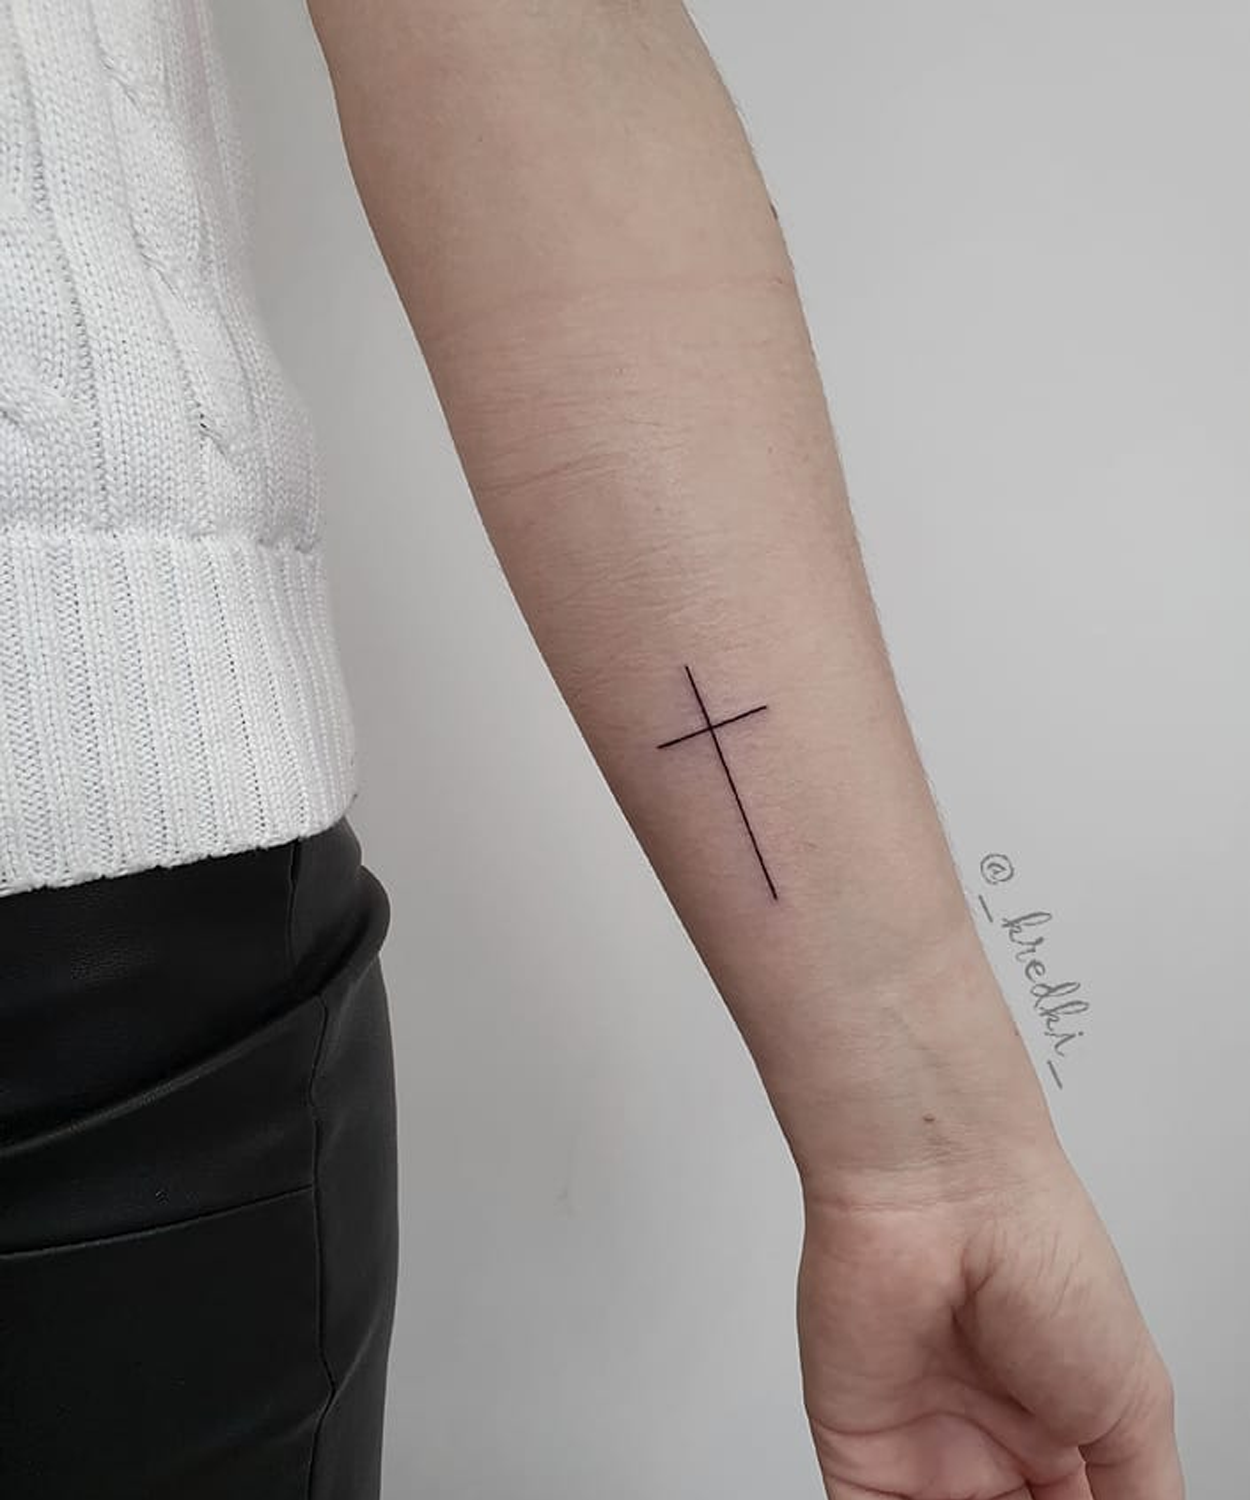 Tatuagem De Cruz